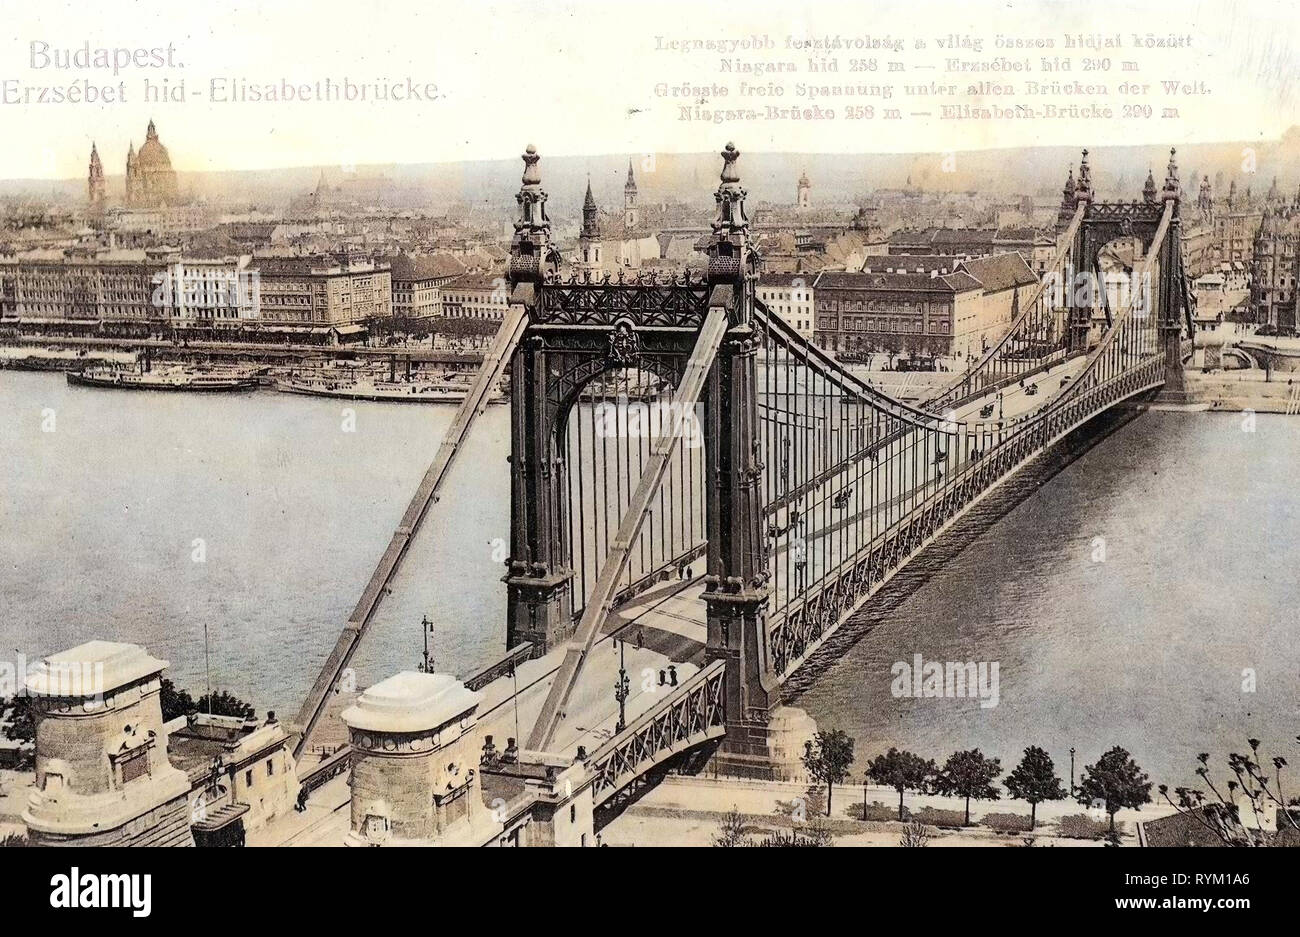 Texte allemand, images historiques du pont Elisabeth, Budapest, 1906, Elisabethbrücke, Hongrie Banque D'Images